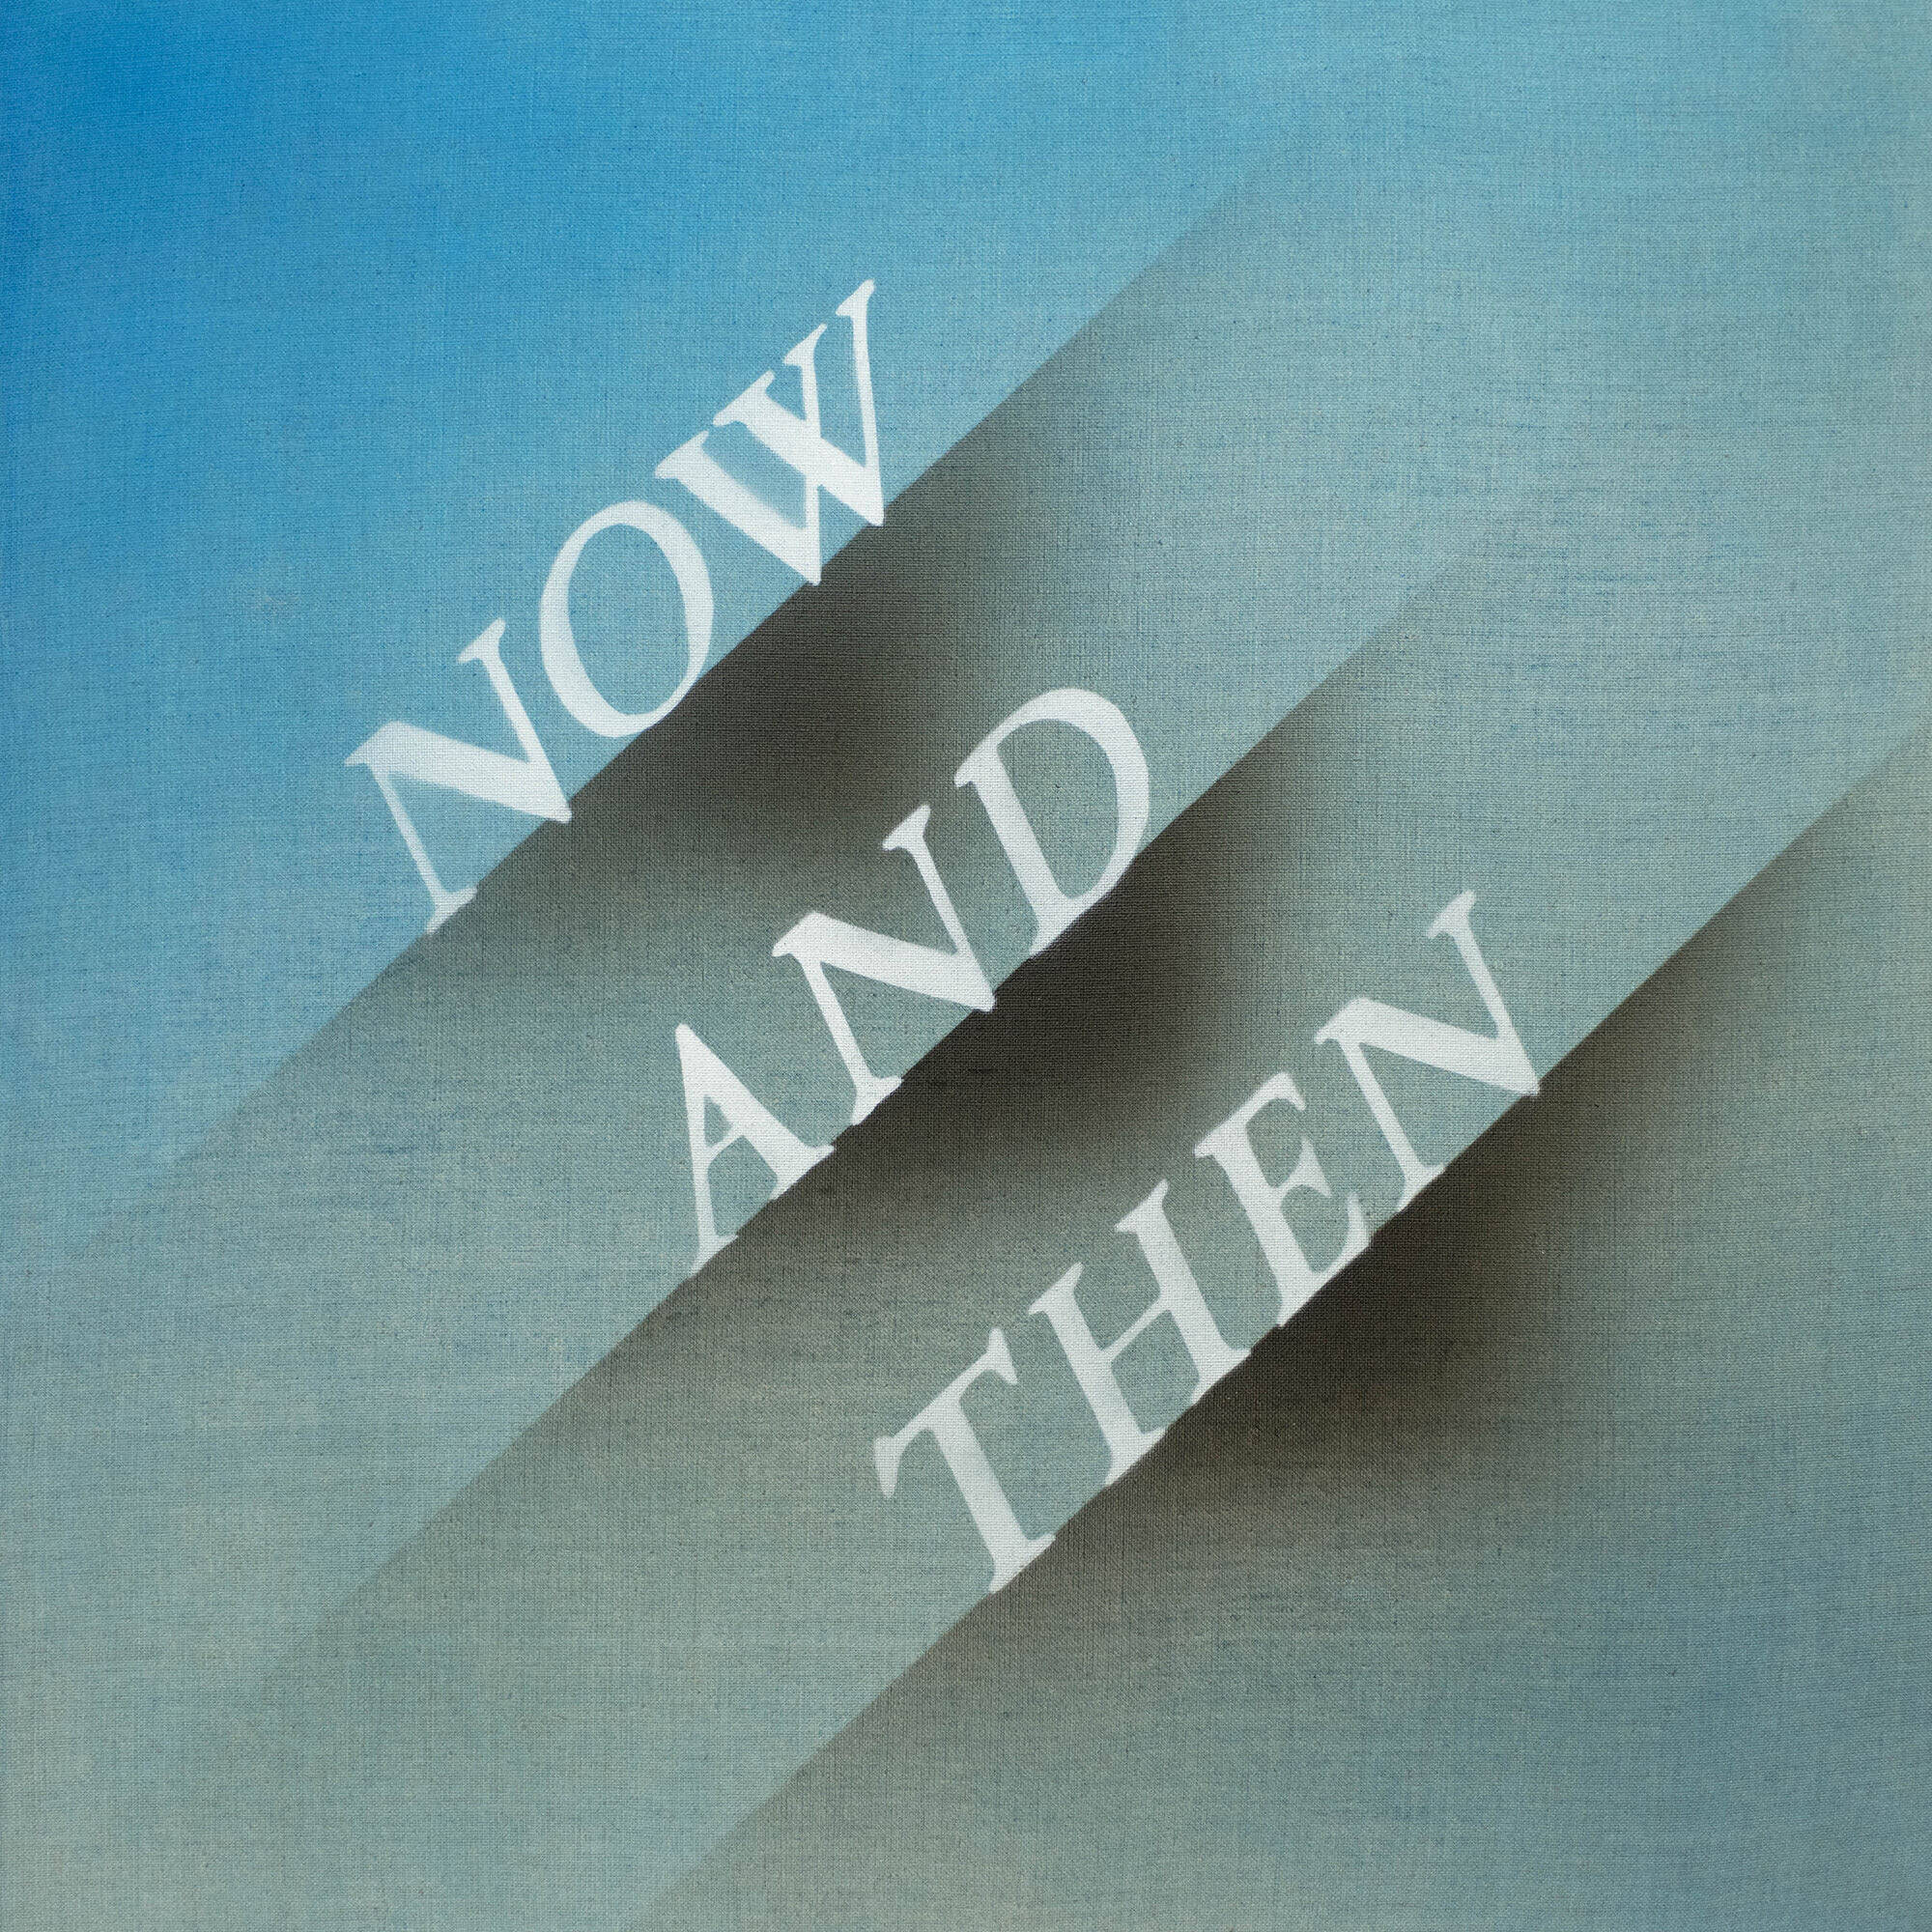 ザ・ビートルズ「最後の新曲」は4人の友情の証　関係者が明かす「Now and Then」制作秘話